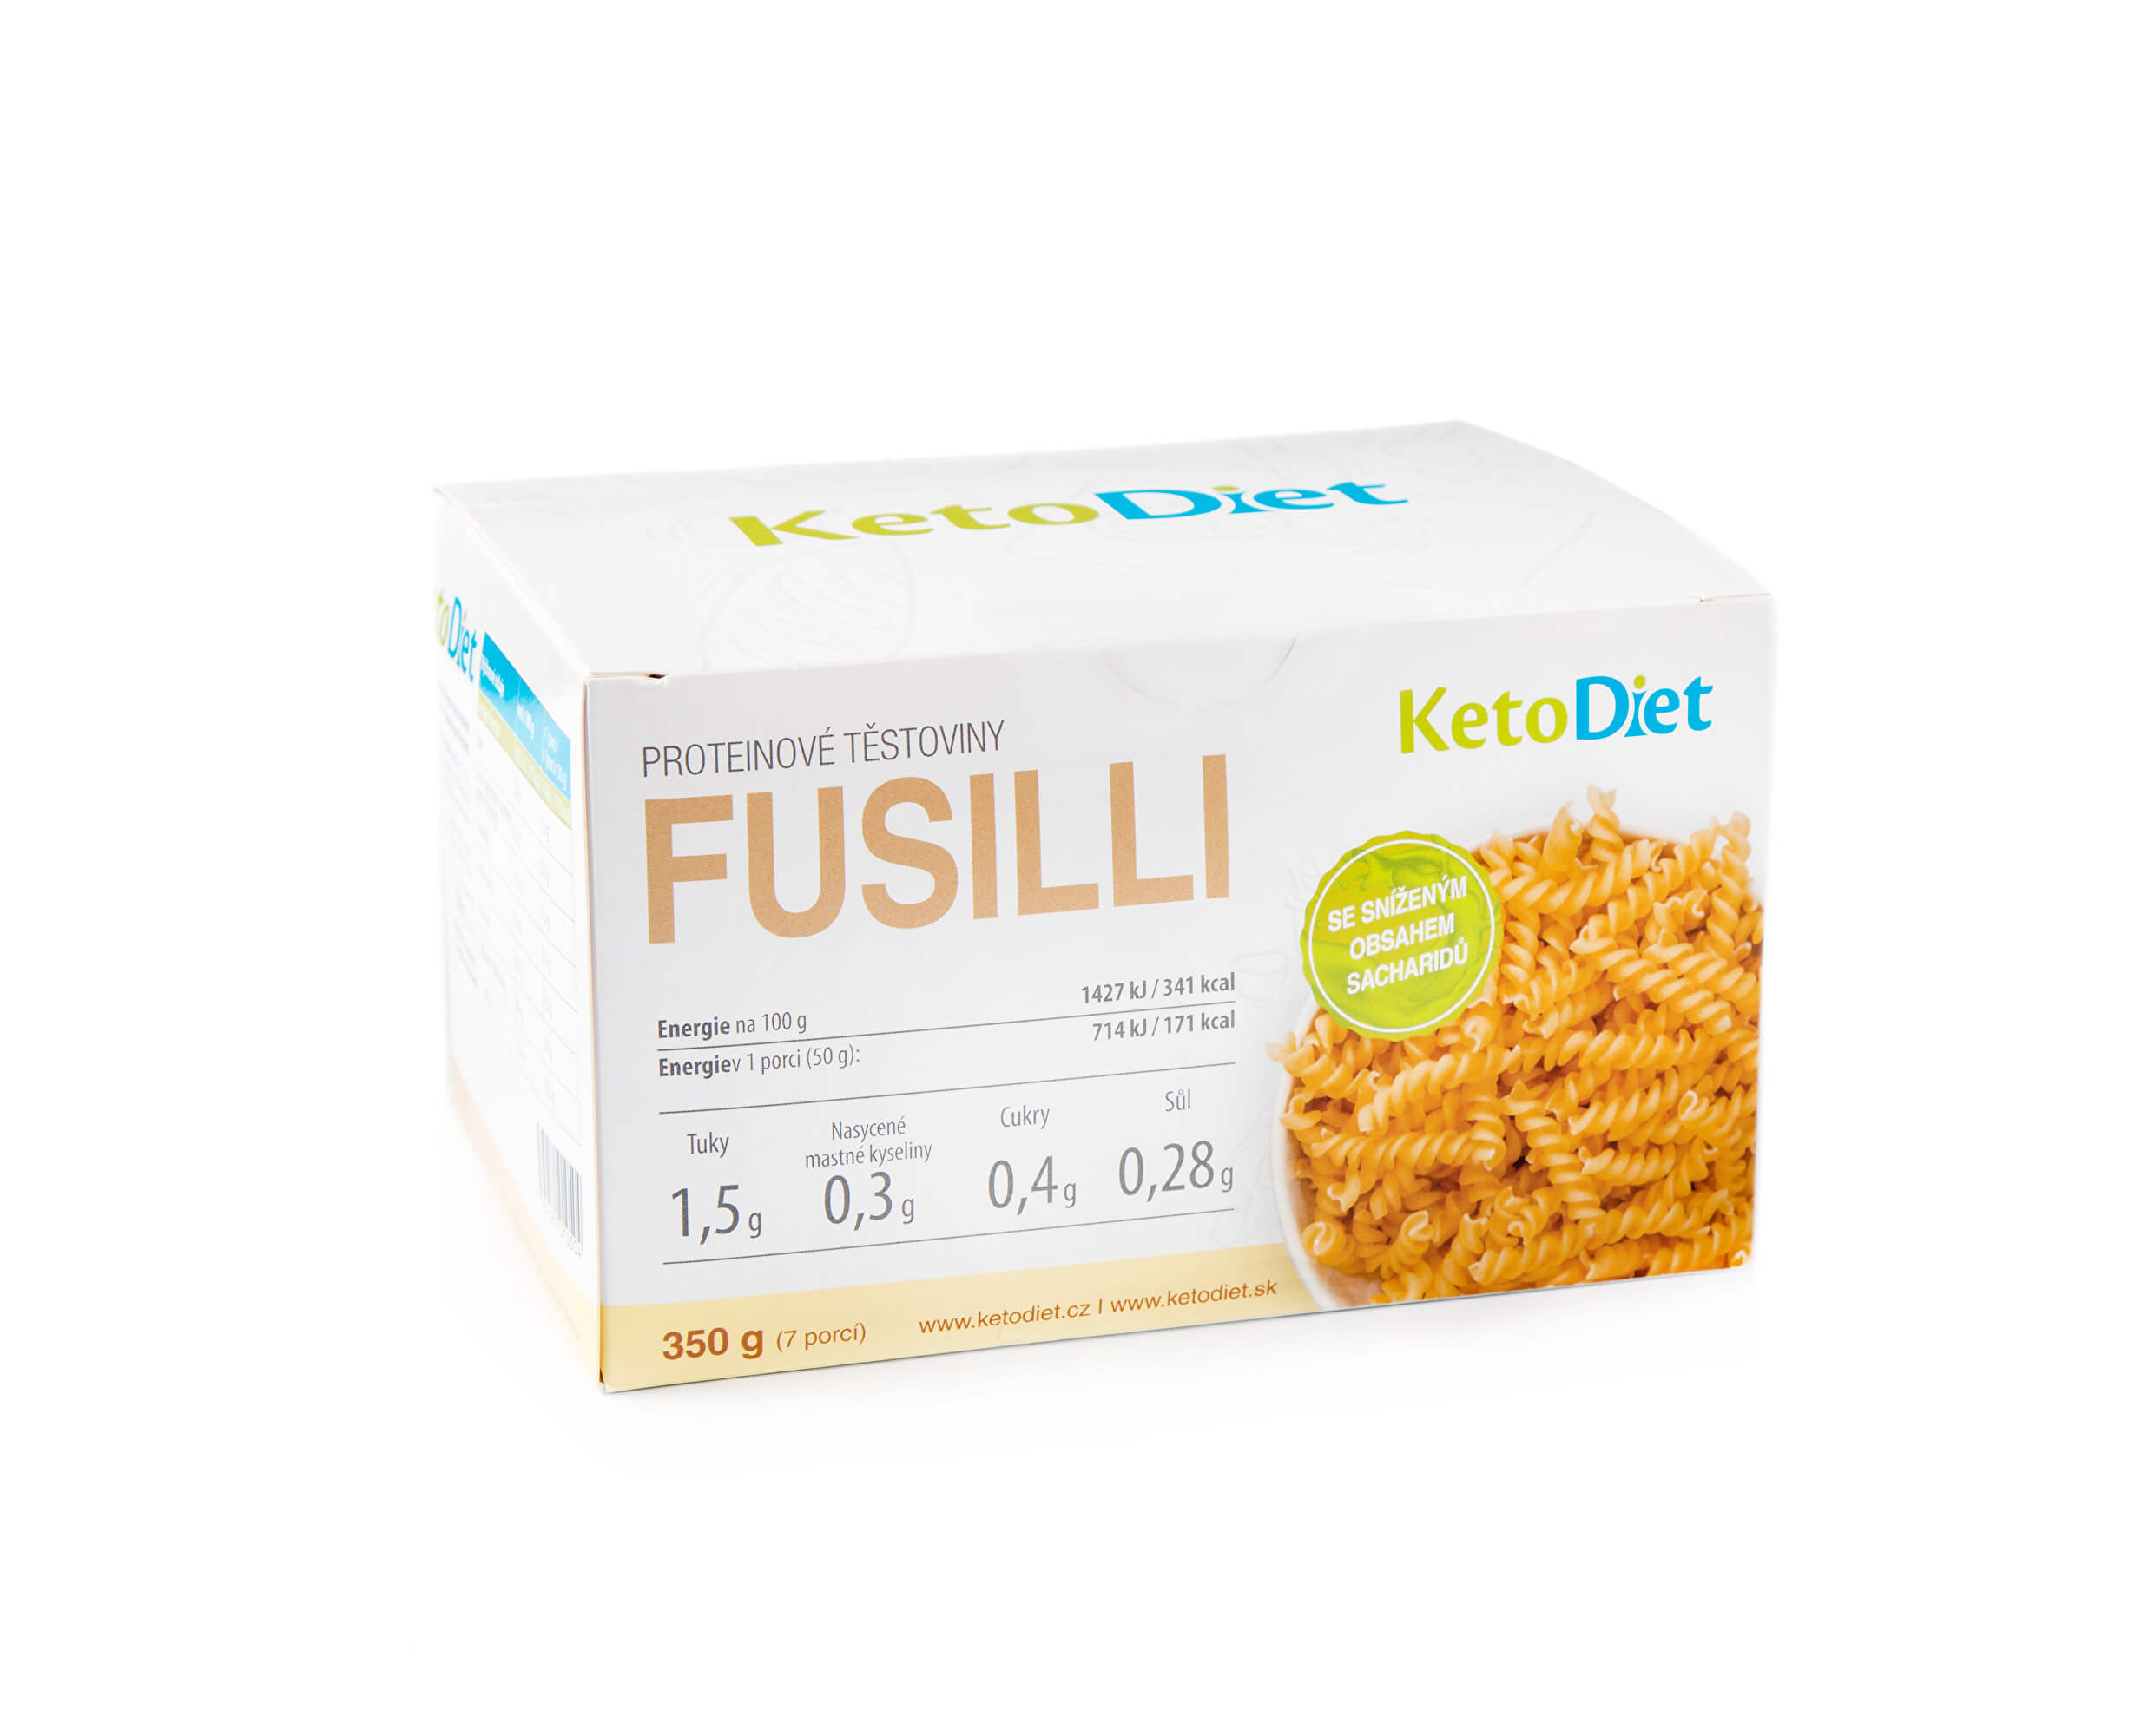 KetoDiet Proteinové těstoviny FUSILLI (7 porcí)